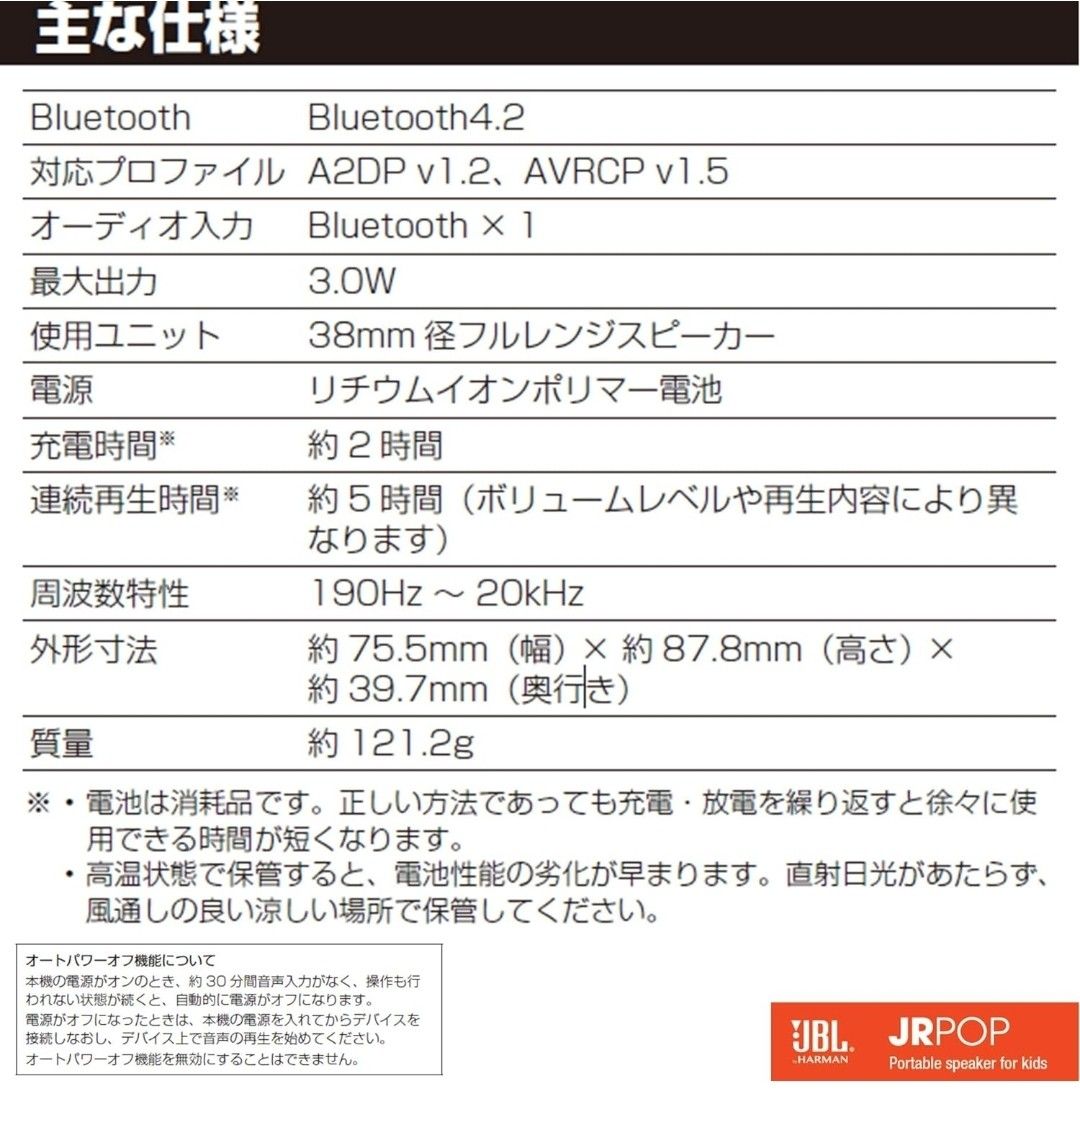 【新品】JBL JRPOP Bluetooth 防水 ポータブルスピーカー